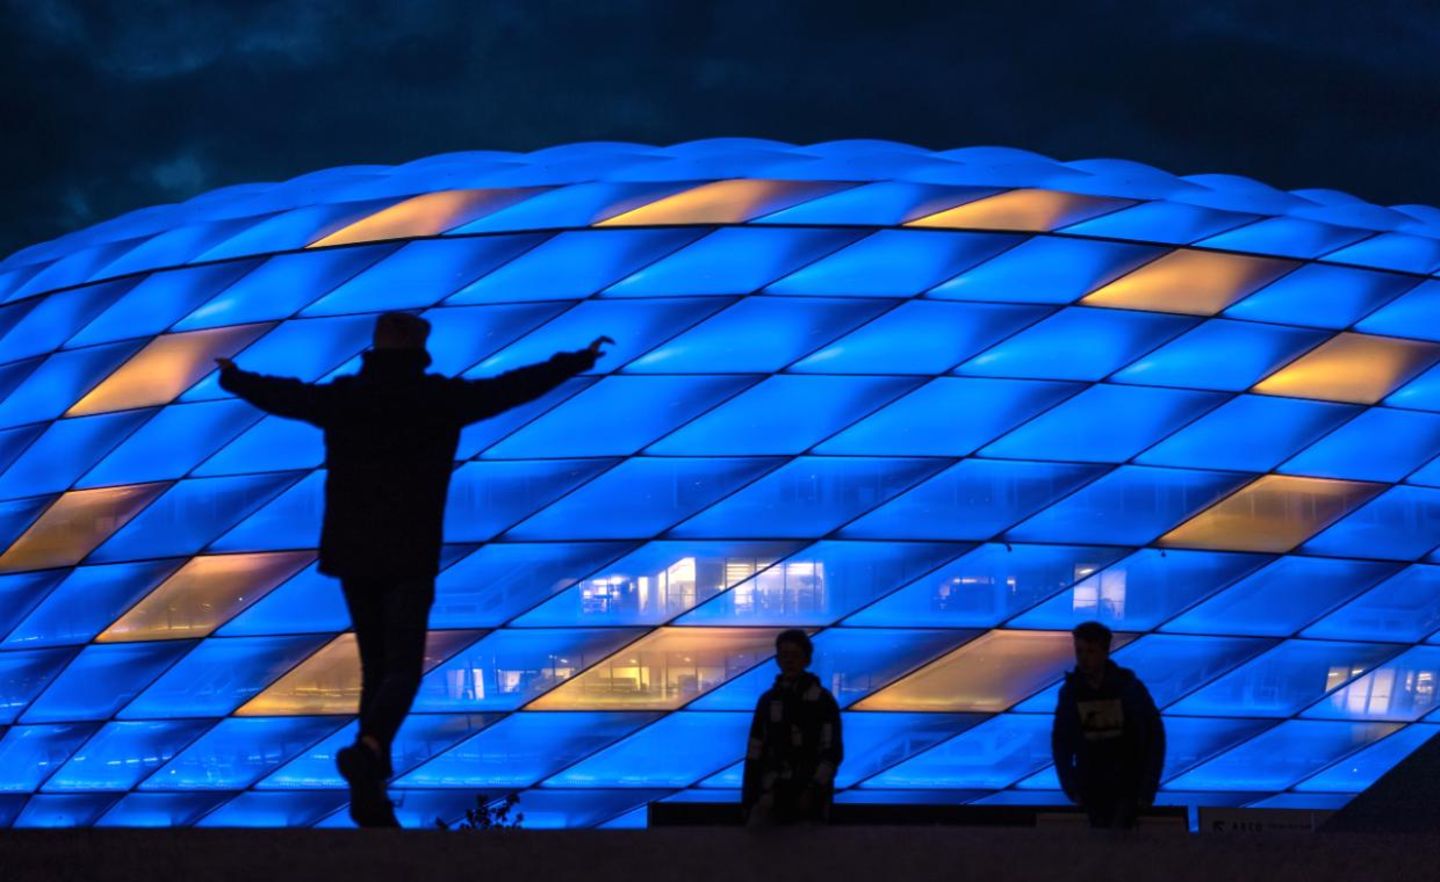 Anlässlich des Europatages am 9. Mai leuchtet die Allianz Arena in den Farben der Flagge der Europäischen Union